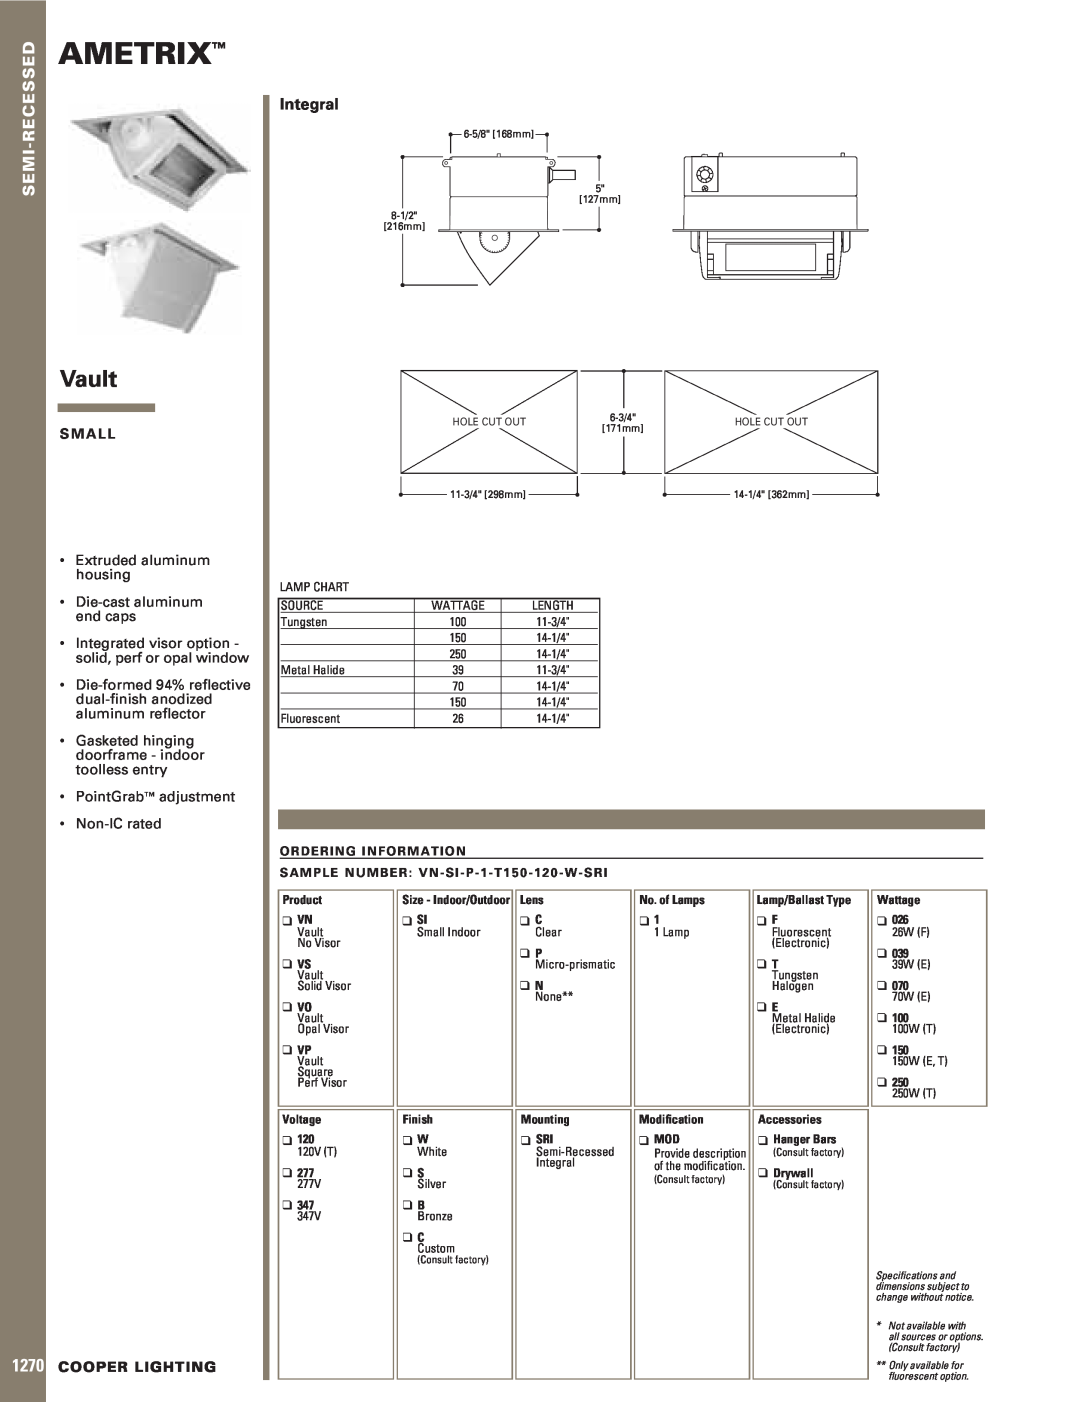 Cooper Lighting 1270 specifications Ametrix, Vault, Semi-Recessed, Integral, S M A L L, Extruded aluminum housing 